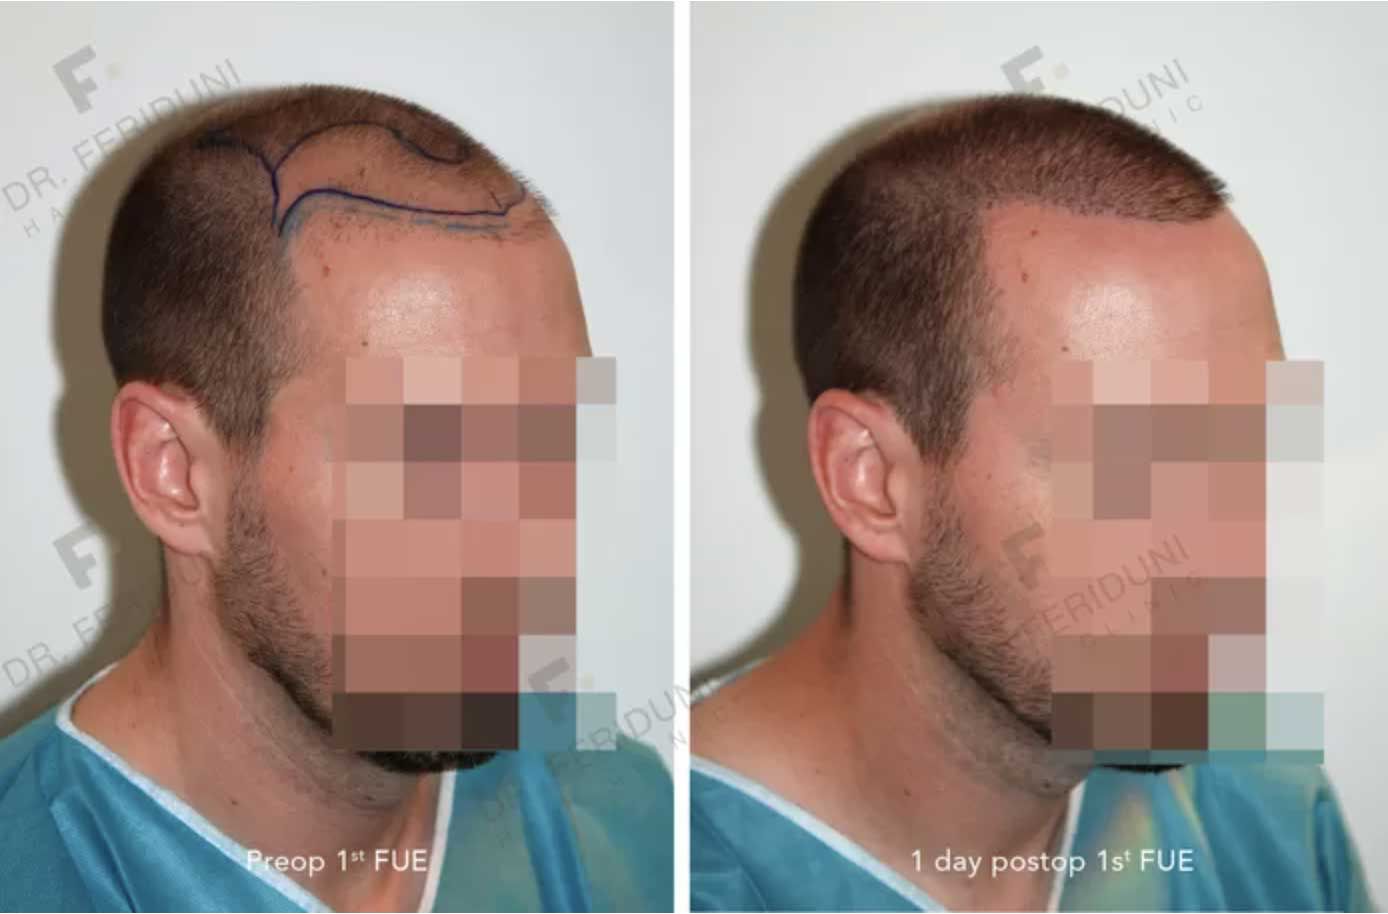 voor-en-na-Repair2-fde31eb9 Dr. Feriduni warns on increase repair hair transplants